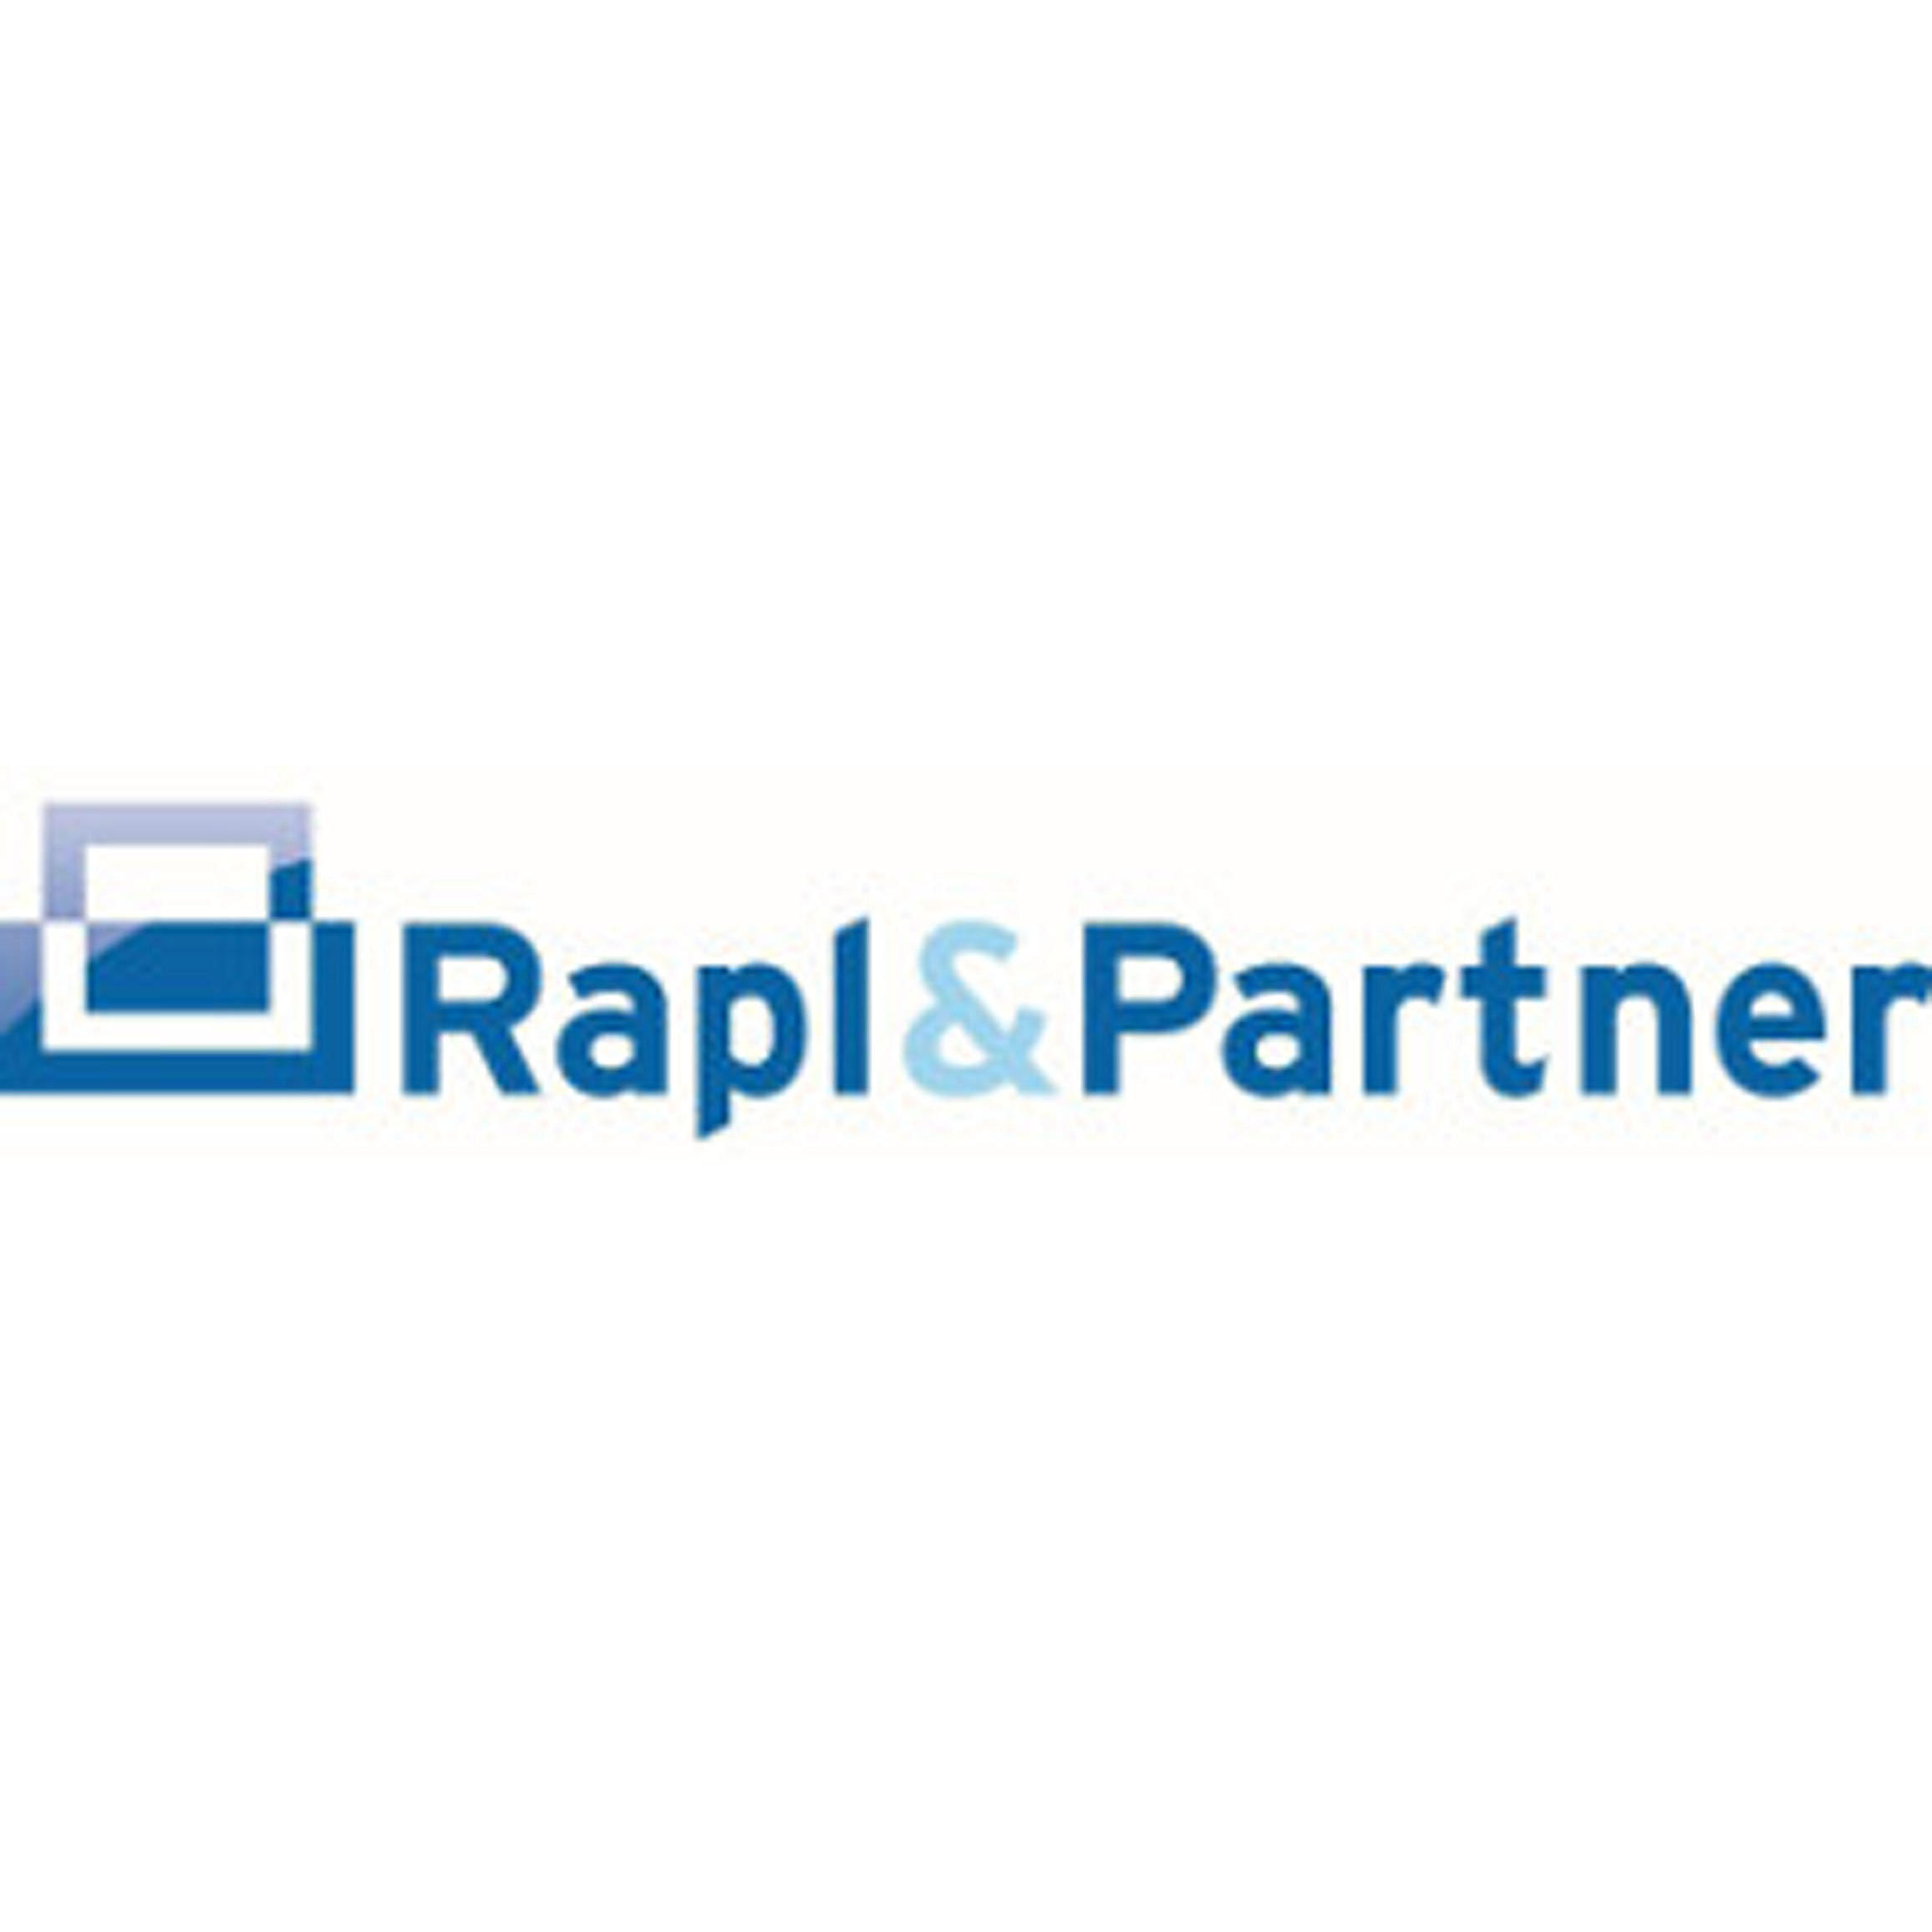 Rapl & Partner GmbH Logo